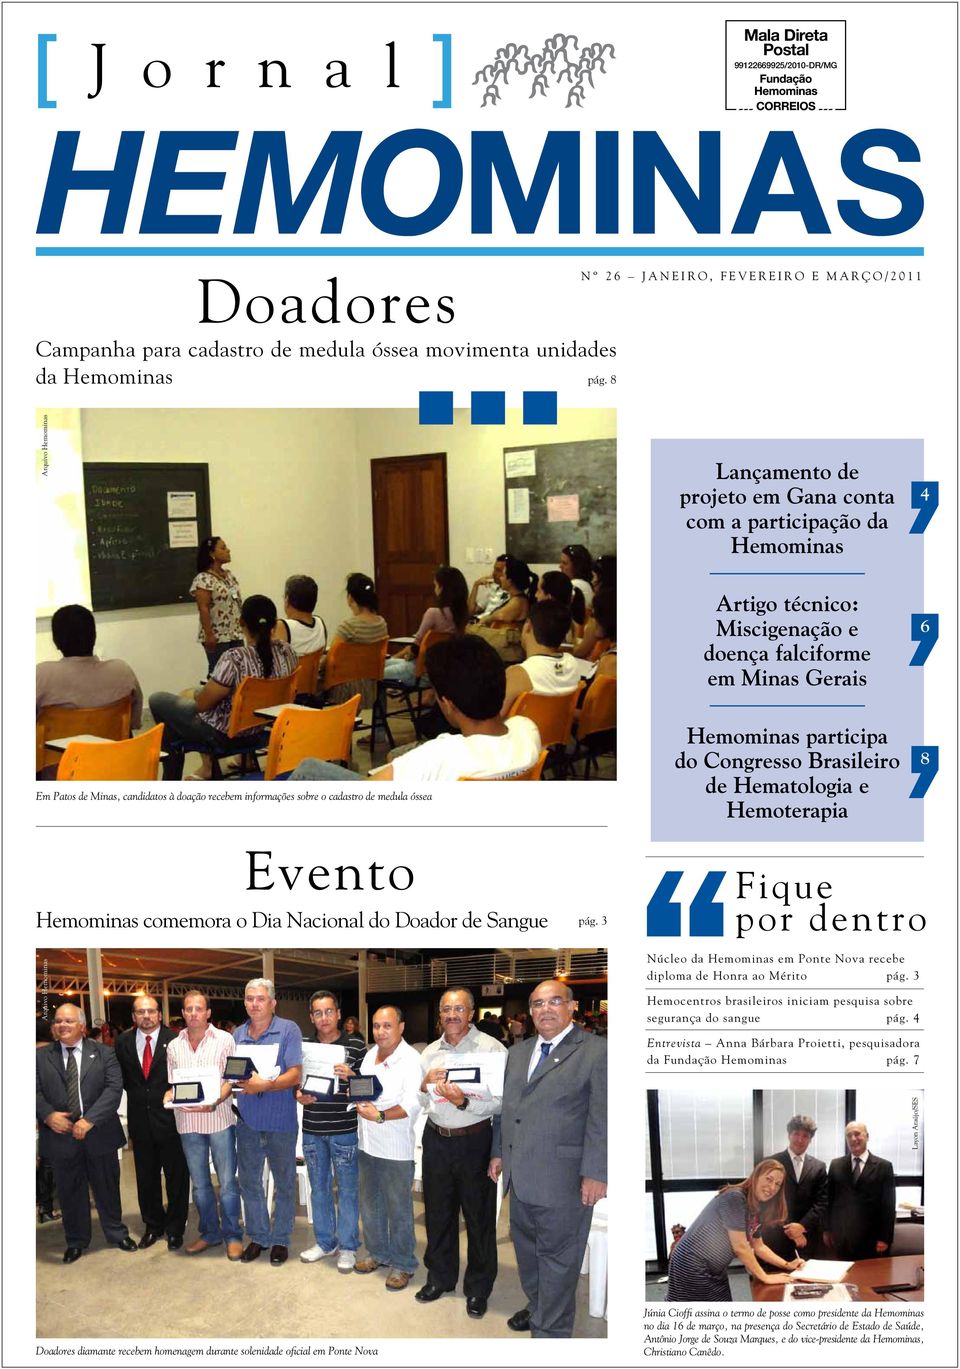 sobre o cadastro de medula óssea Hemominas participa do Congresso Brasileiro de Hematologia e Hemoterapia 8 Evento Hemominas comemora o Dia Nacional do Doador de Sangue pág.